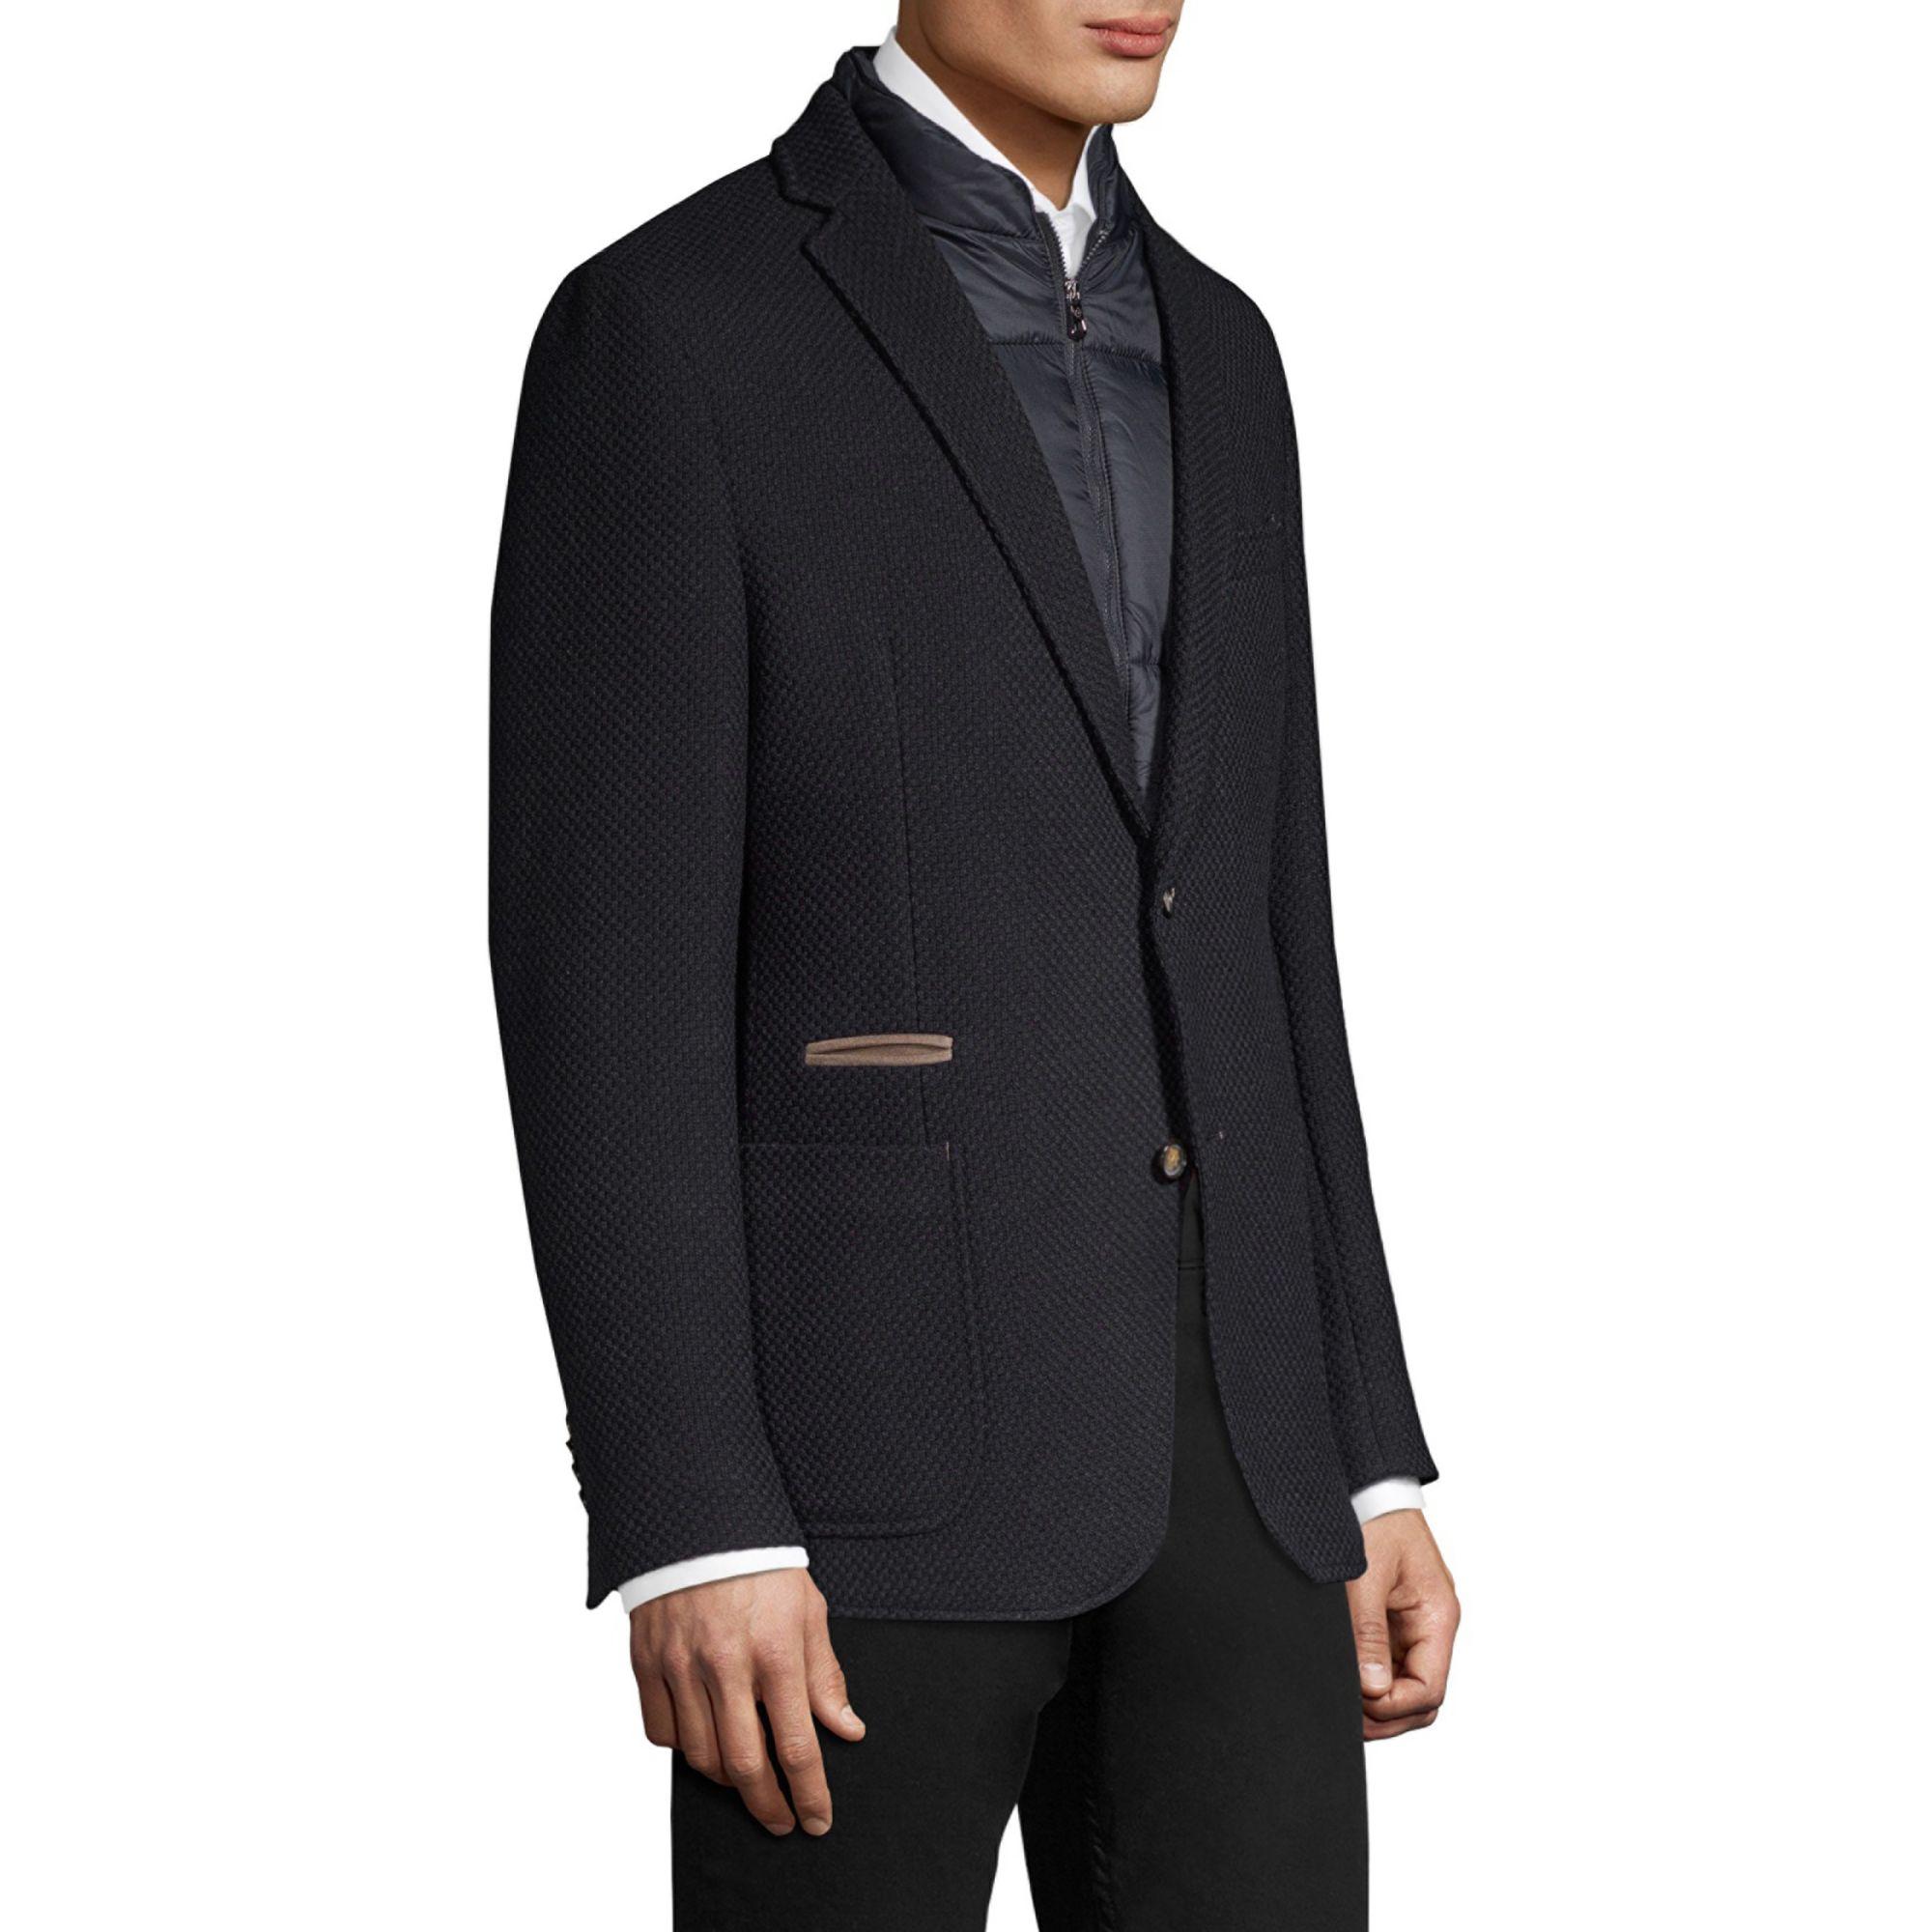 Bugatti Men's Suit Jacket